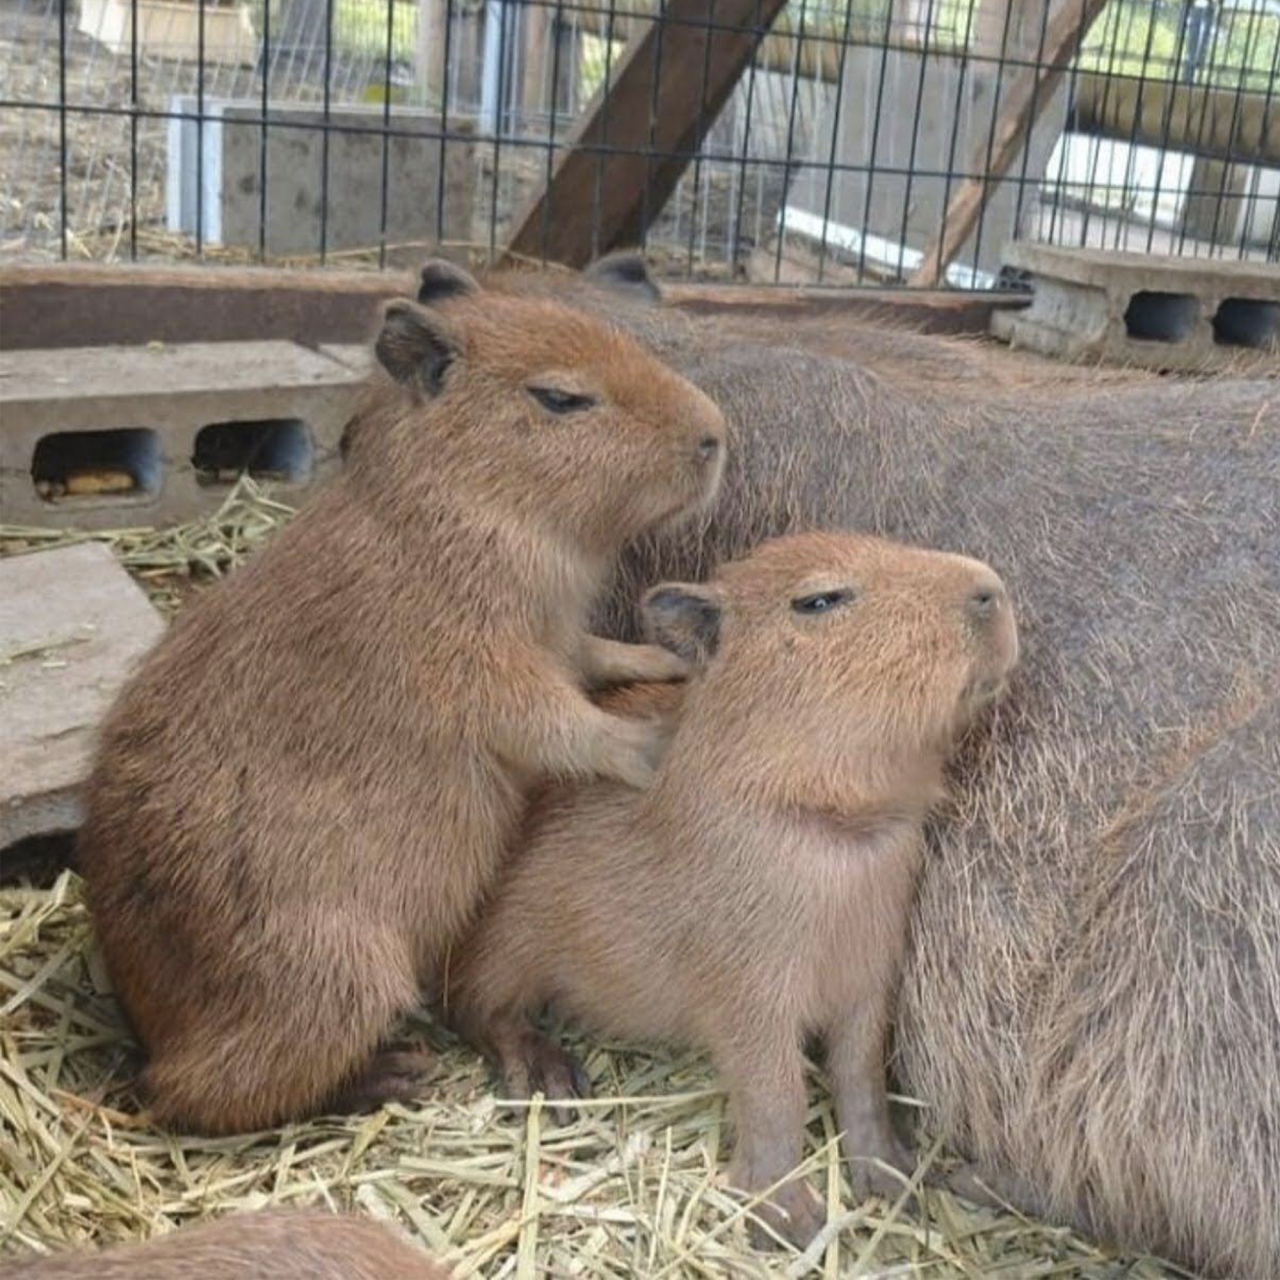 DÉBORA SANTOS — I LOVE CAPYBARAS SO MUCH I made these capybara